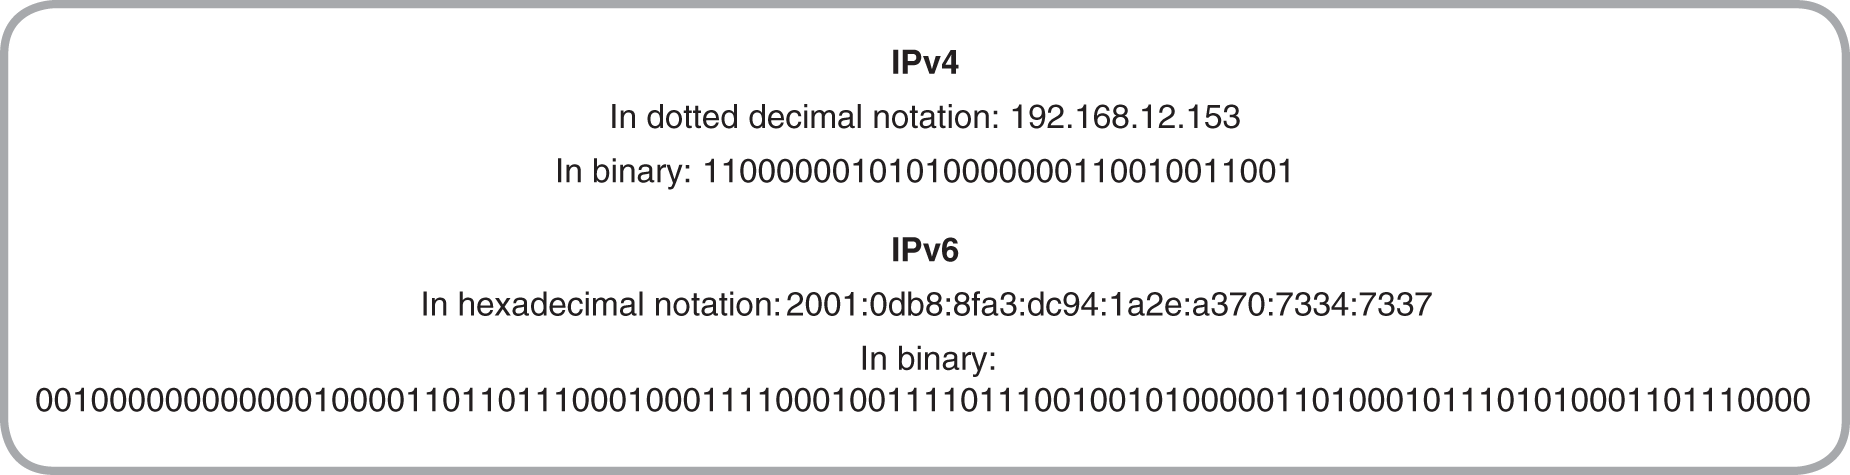 An I P v 4 address is compared to an I P v 6 address. 